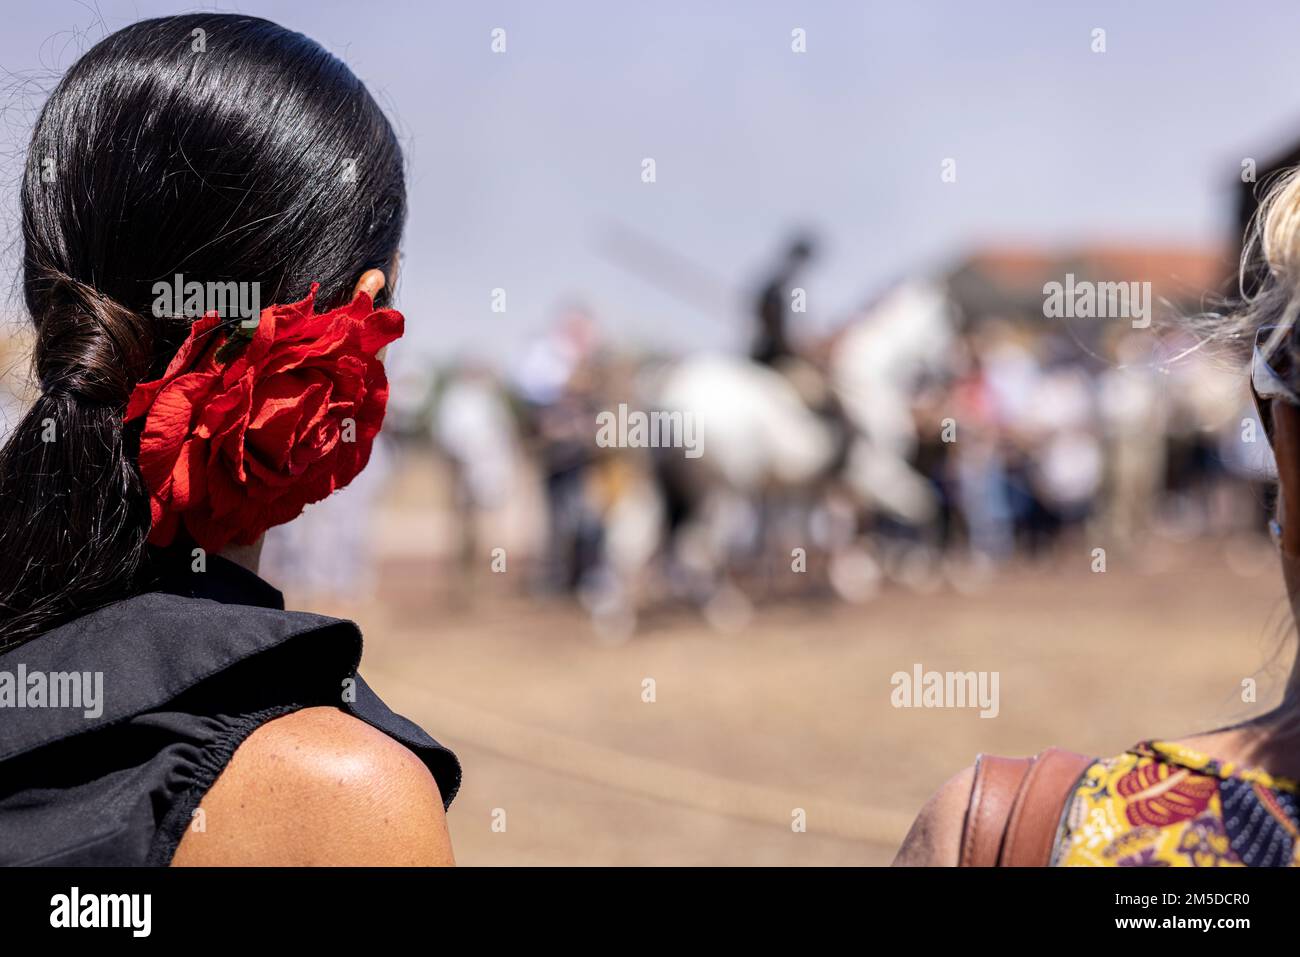 Eine Spanierin mit einer roten Rose im schwarzen Haar sieht sich beim Dreschen traditionelle andalusische Reiter an, Dia de la trilla im Stockfoto